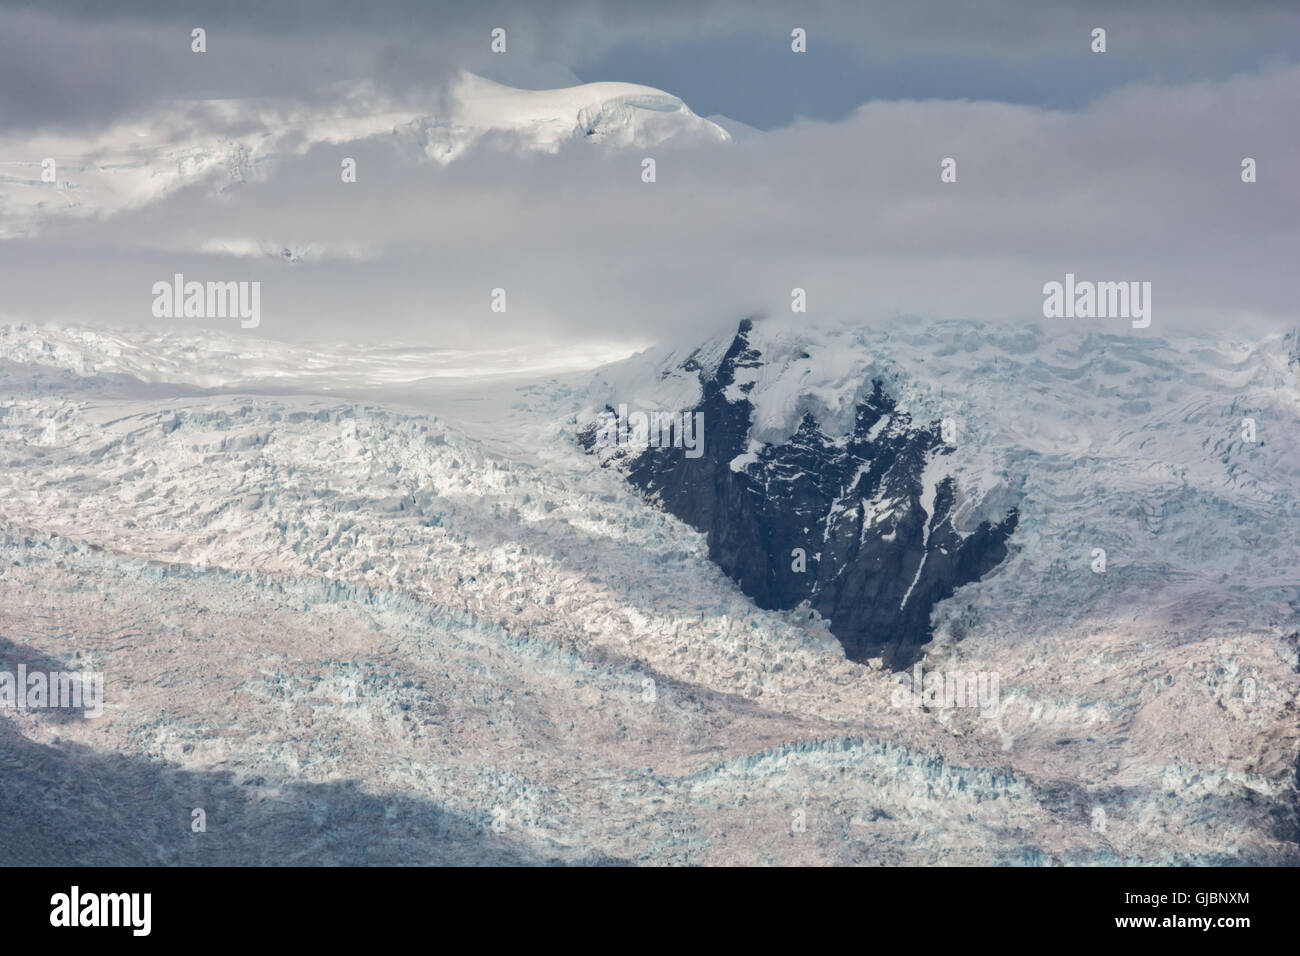 La pared de hielo glaciar Kennicott que fluye alrededor de una roca grande en la ladera del acantilado. Foto de stock